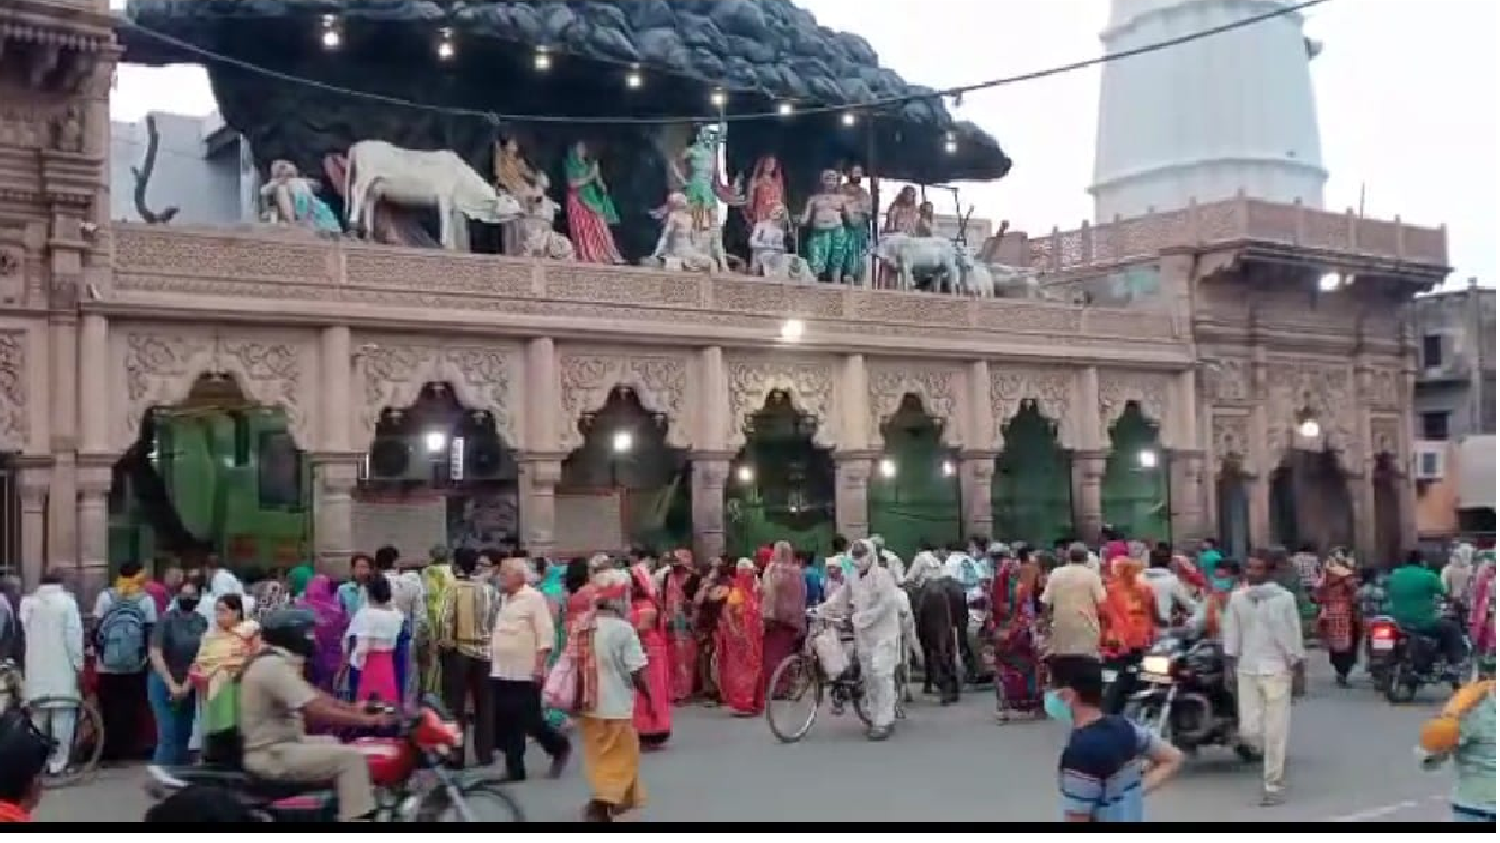 सप्ताहिक बंदी  के दौरान दानघाटी मंदिर पर उमड़ी भीड़  सोशल डिस्टेंस की उड़ी धज्जियां